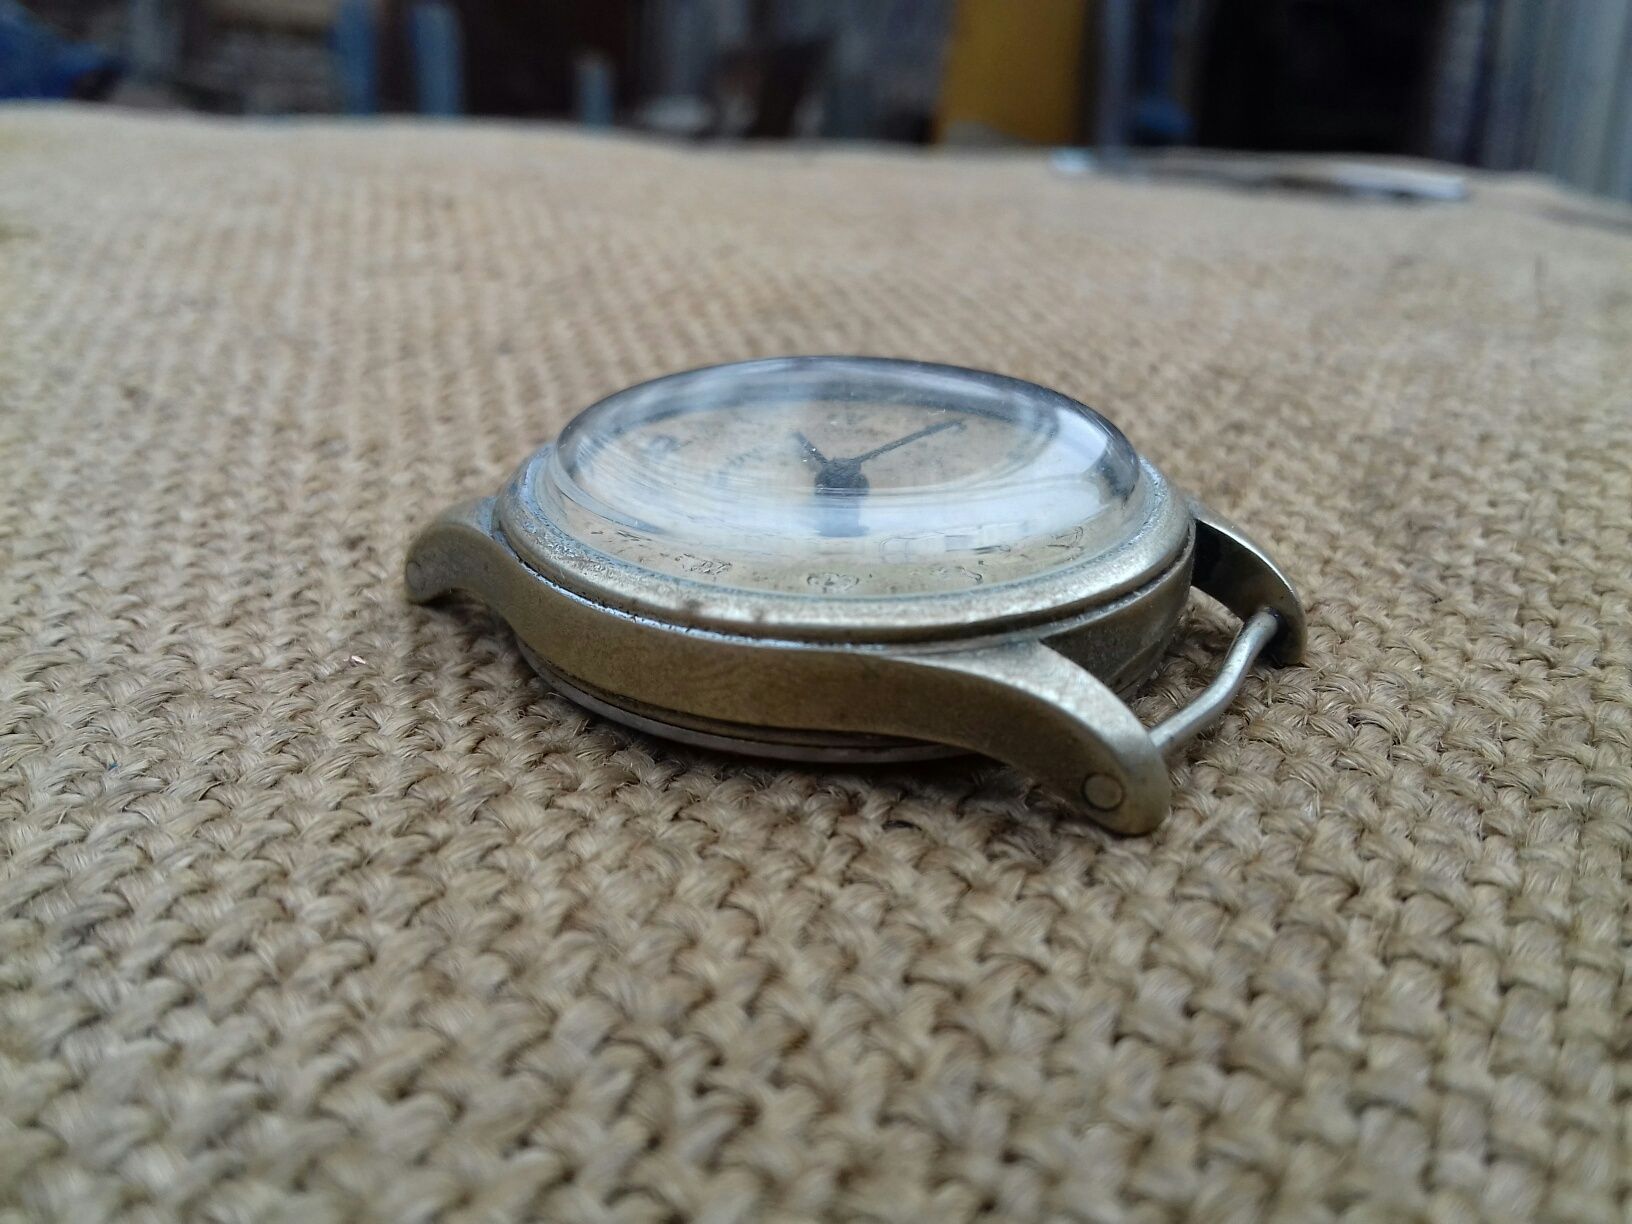 Часы наручные Alpina D калибр 592 мужские , механические